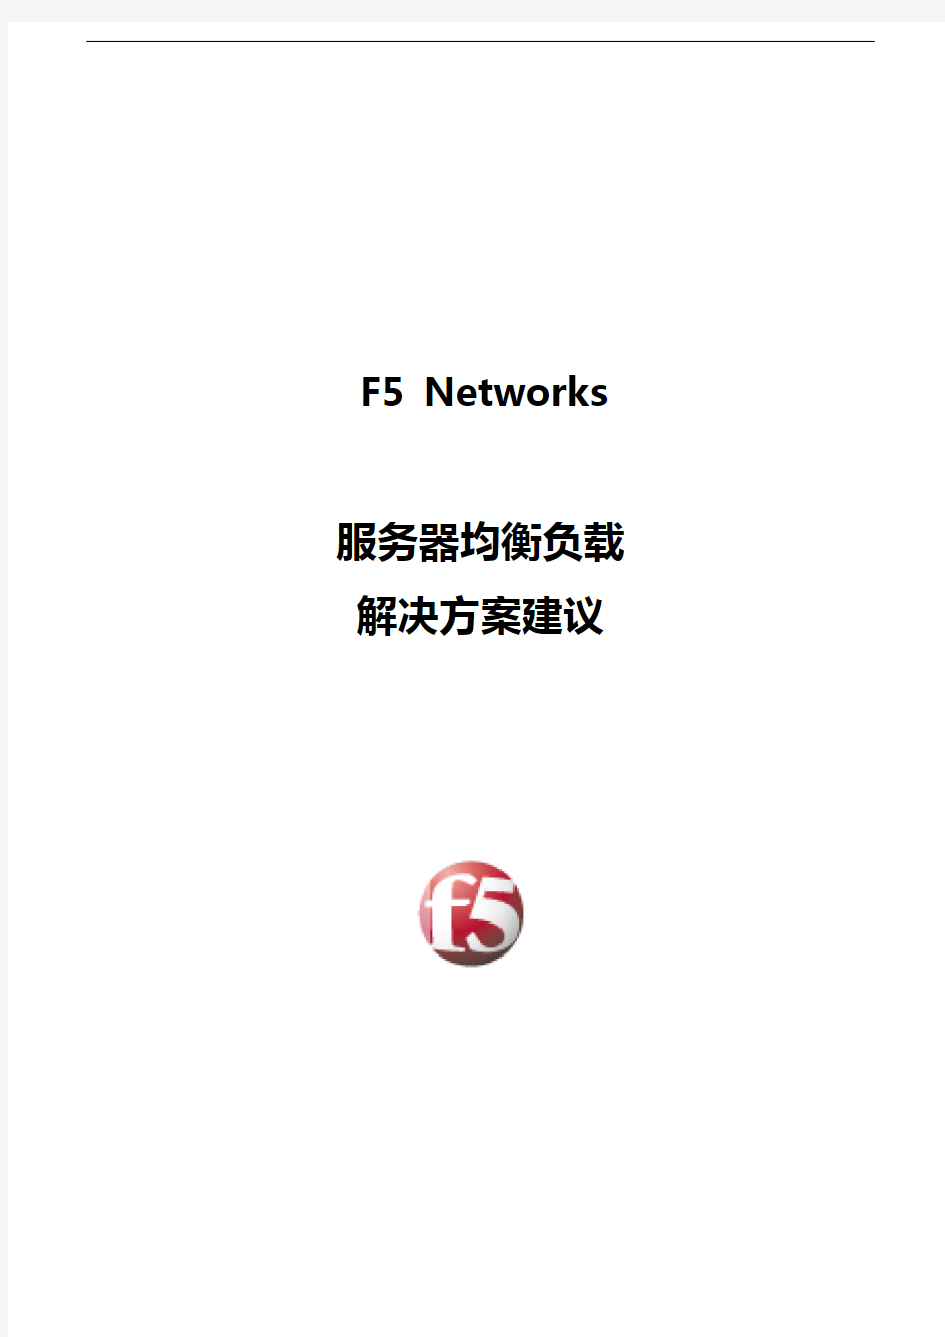 F5服务器负载均衡解决方案报告书